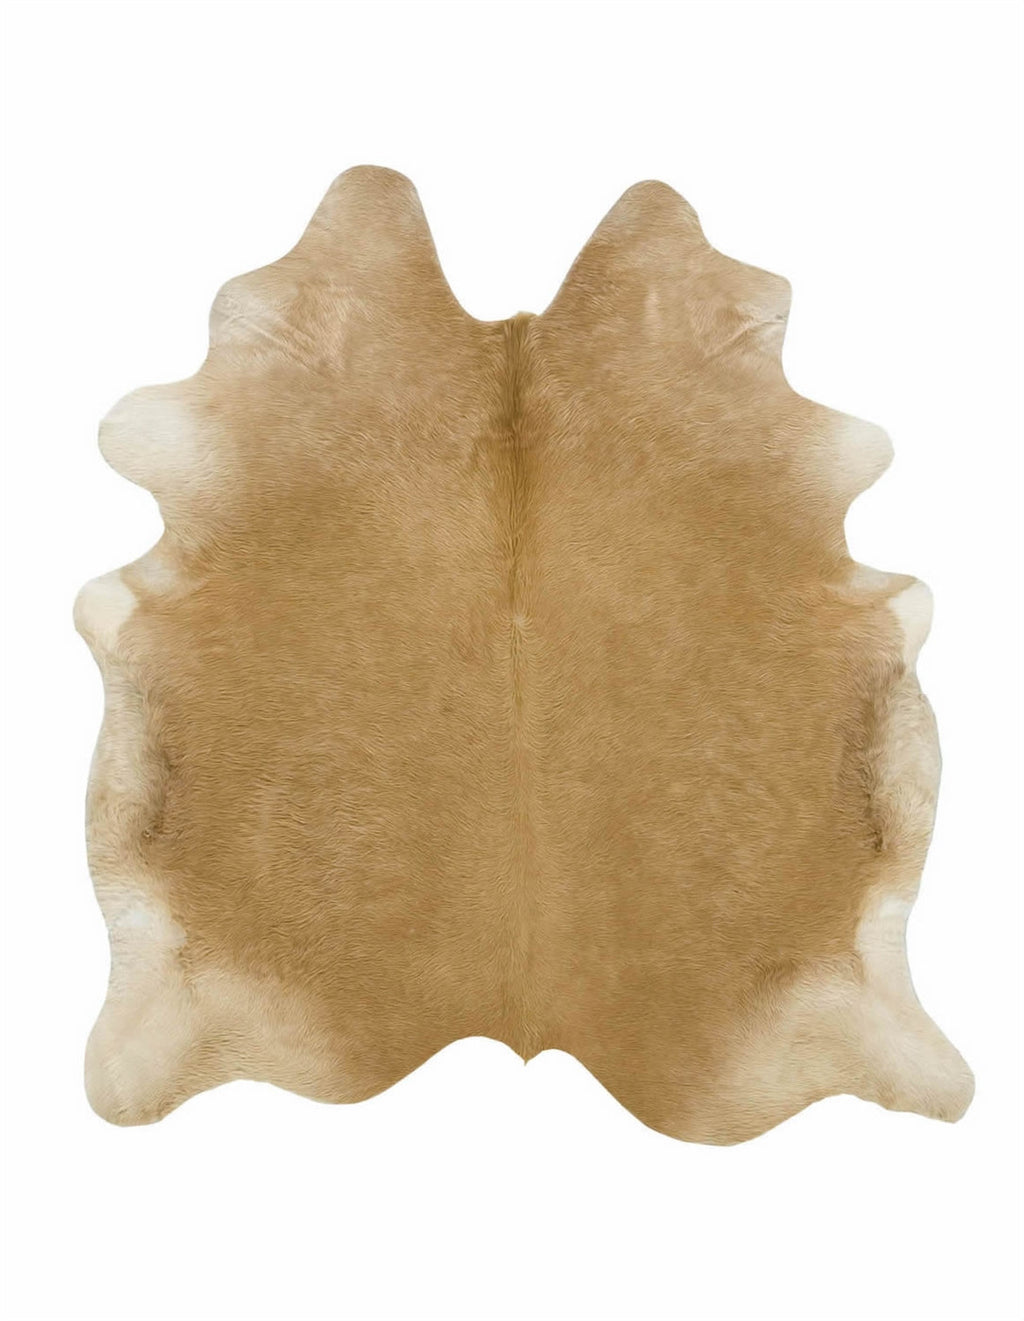 Large solid dark palomino cowhide rug